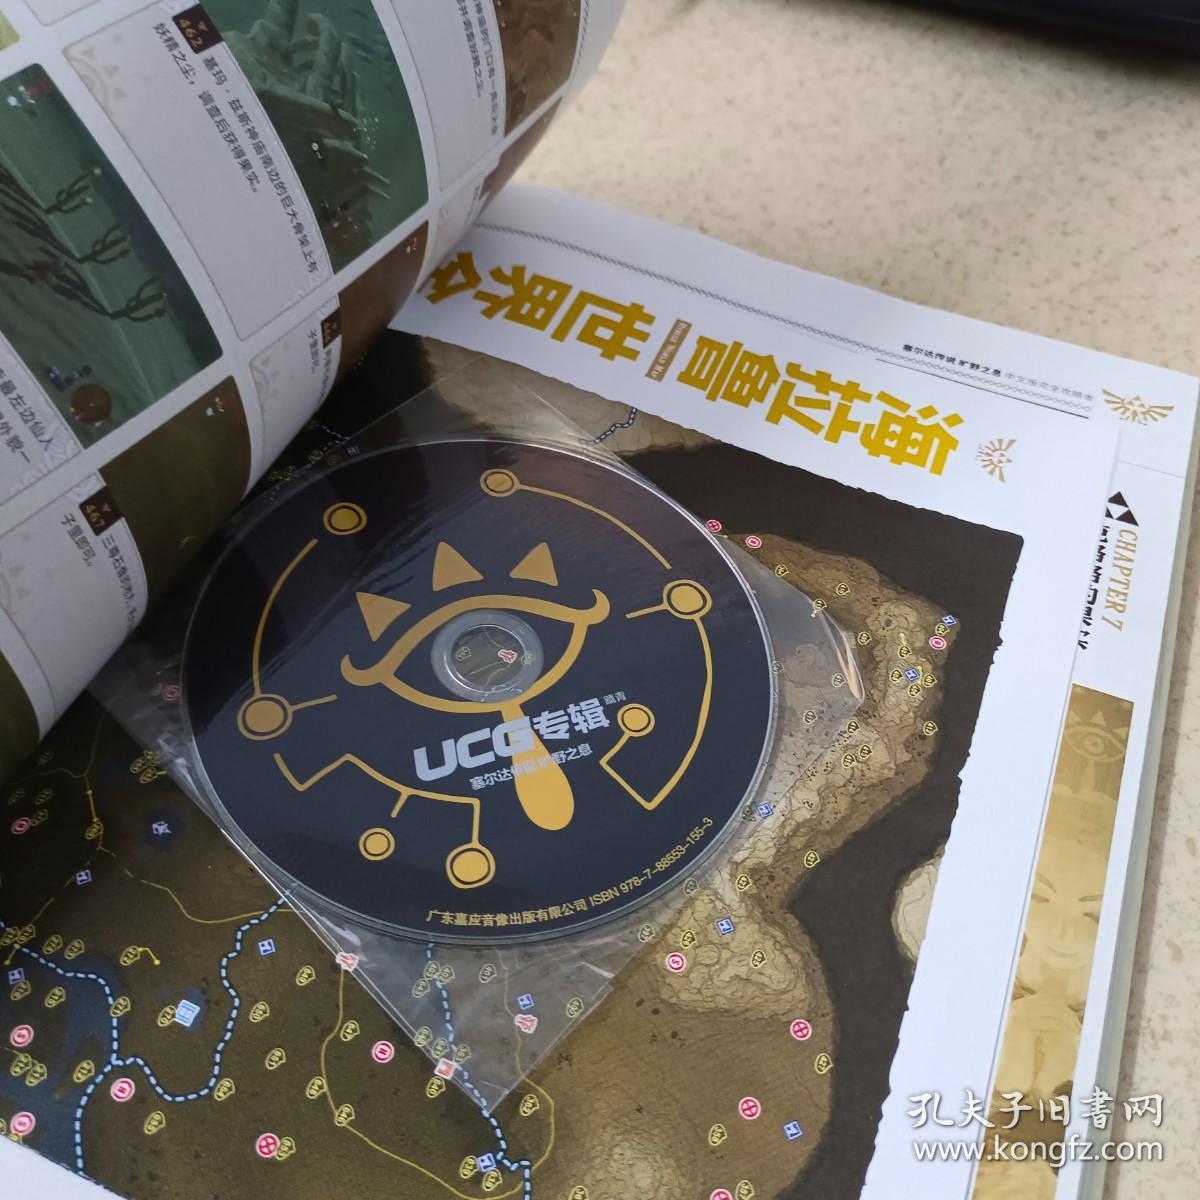 塞尔达传说 旷野之息 中文版完全攻略本    带光盘